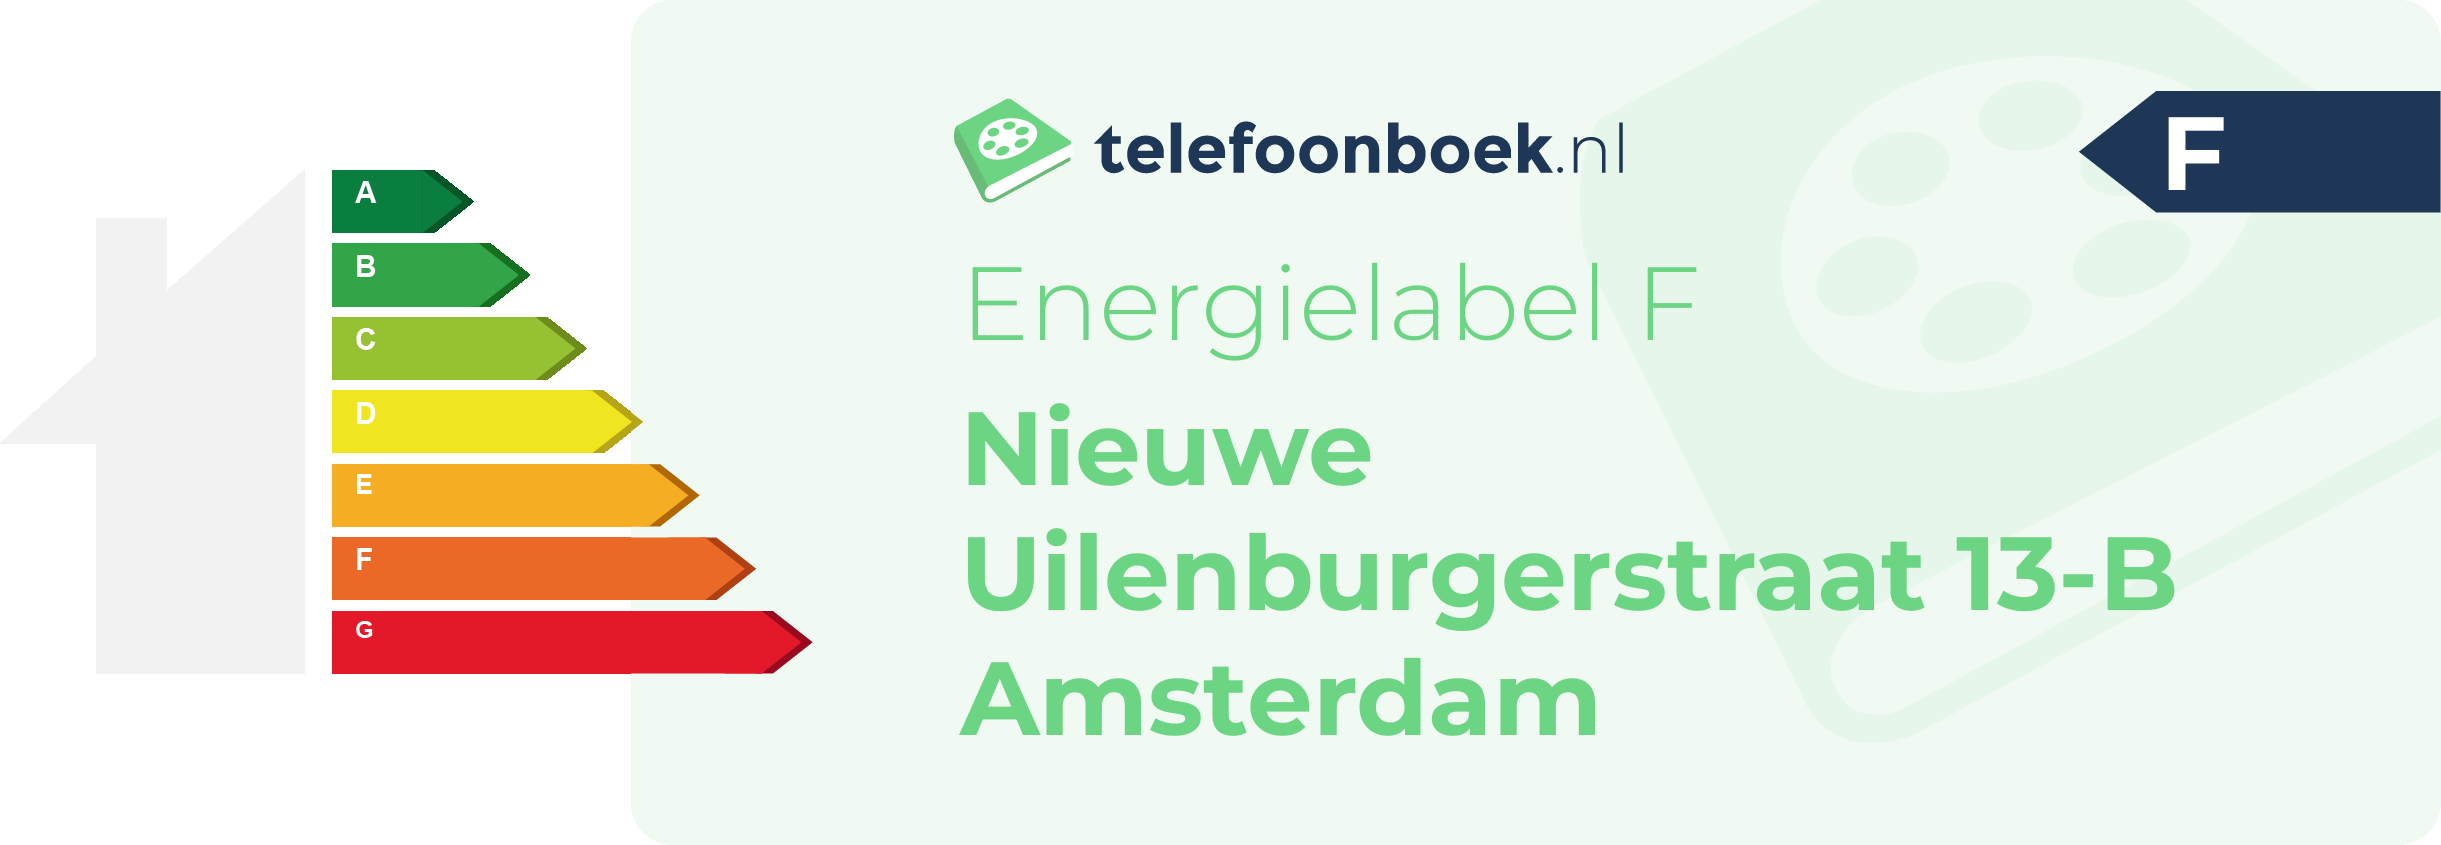 Energielabel Nieuwe Uilenburgerstraat 13-B Amsterdam